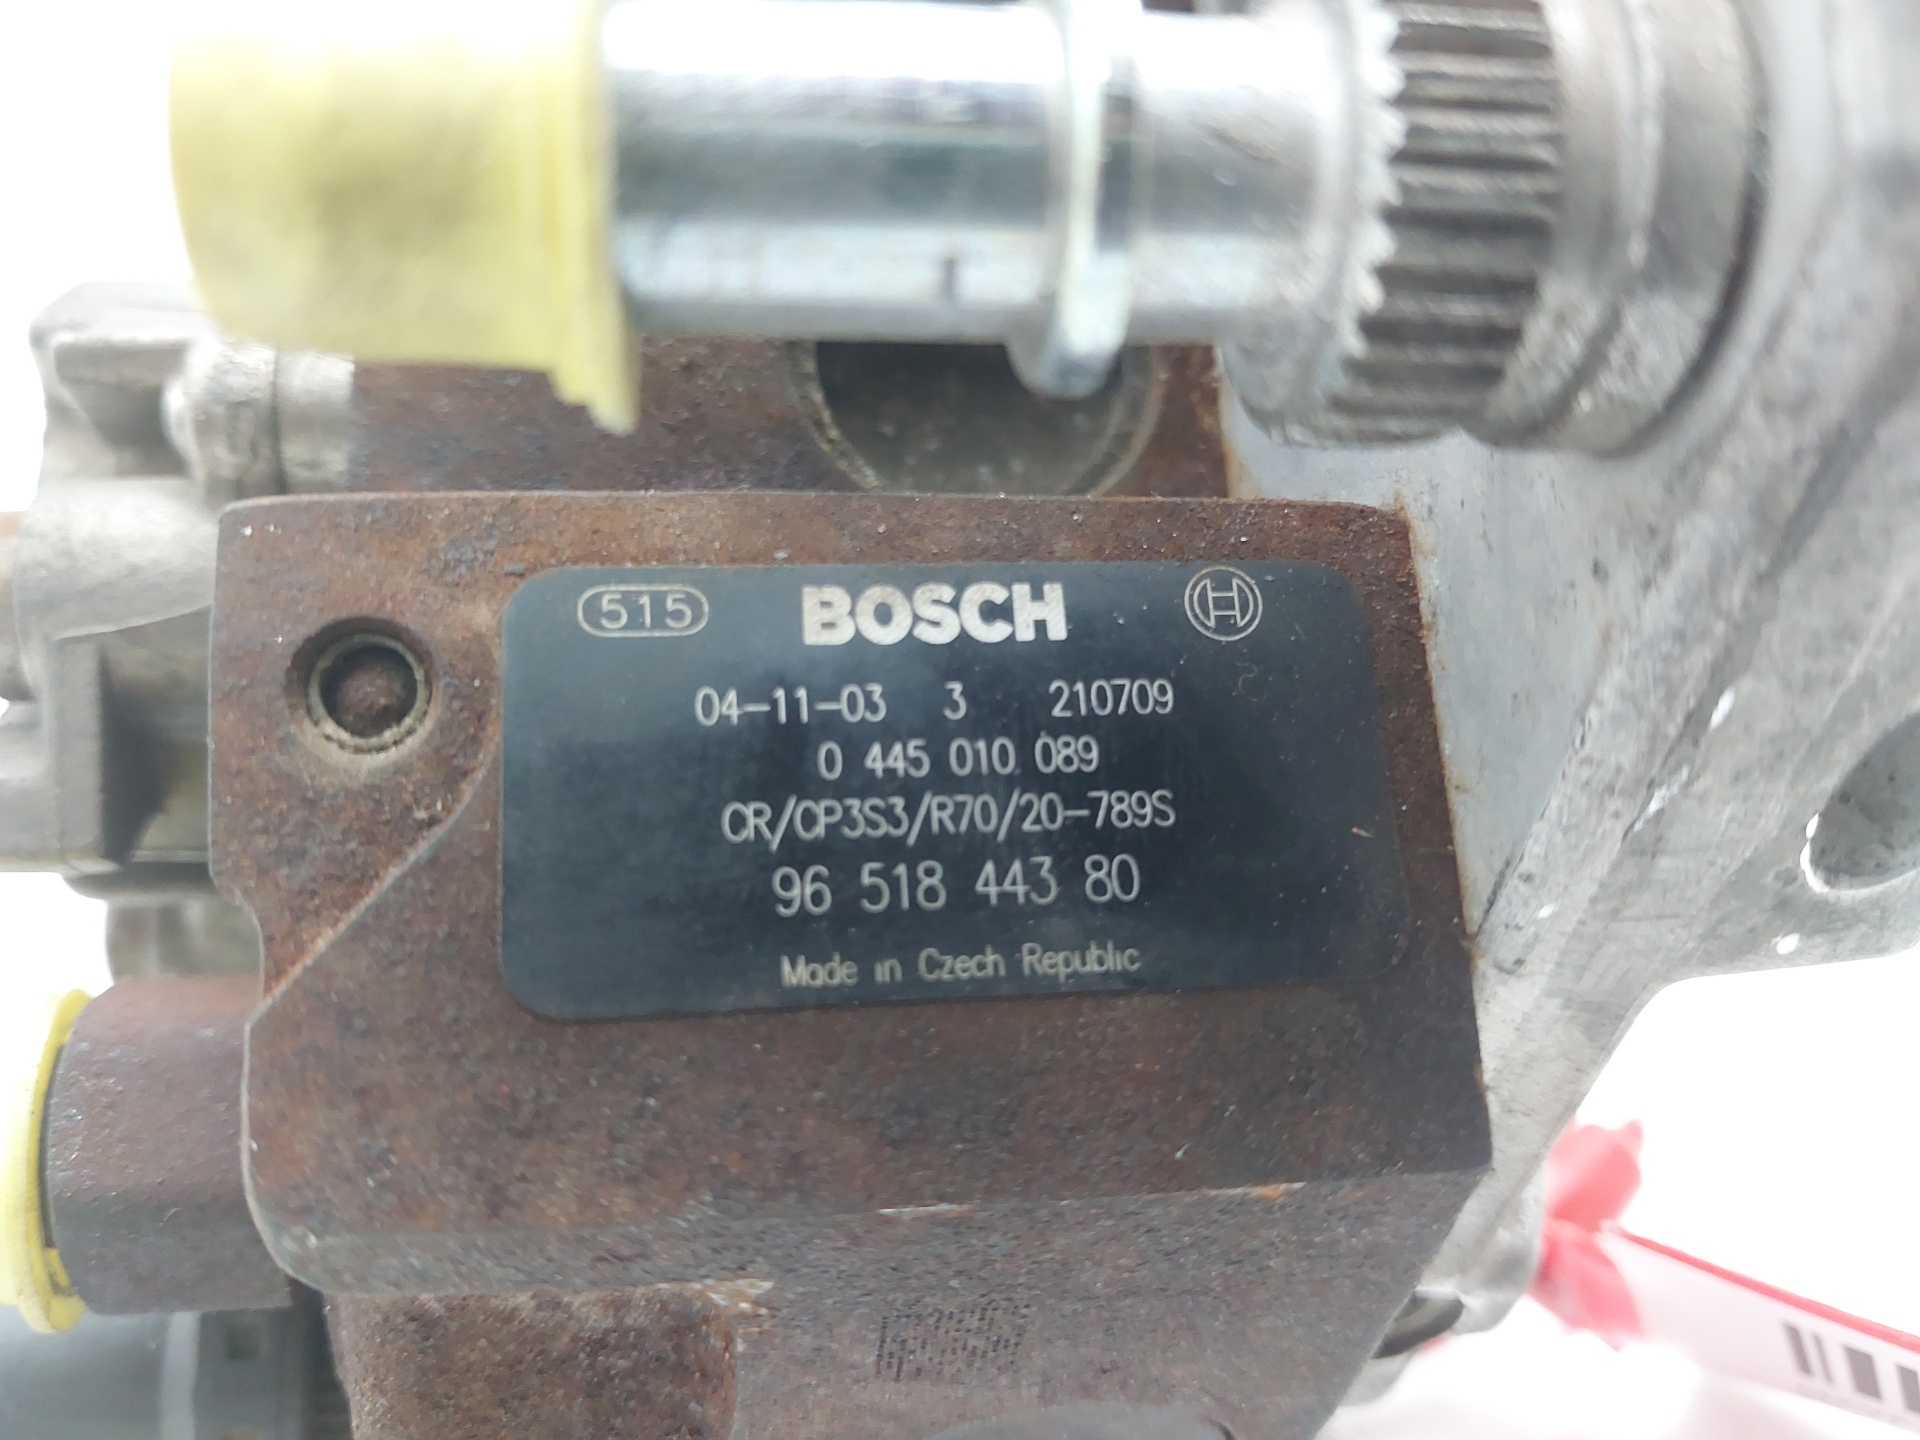 MAZDA 3 BK (2003-2009) High Pressure Fuel Pump 9651844380 25303384